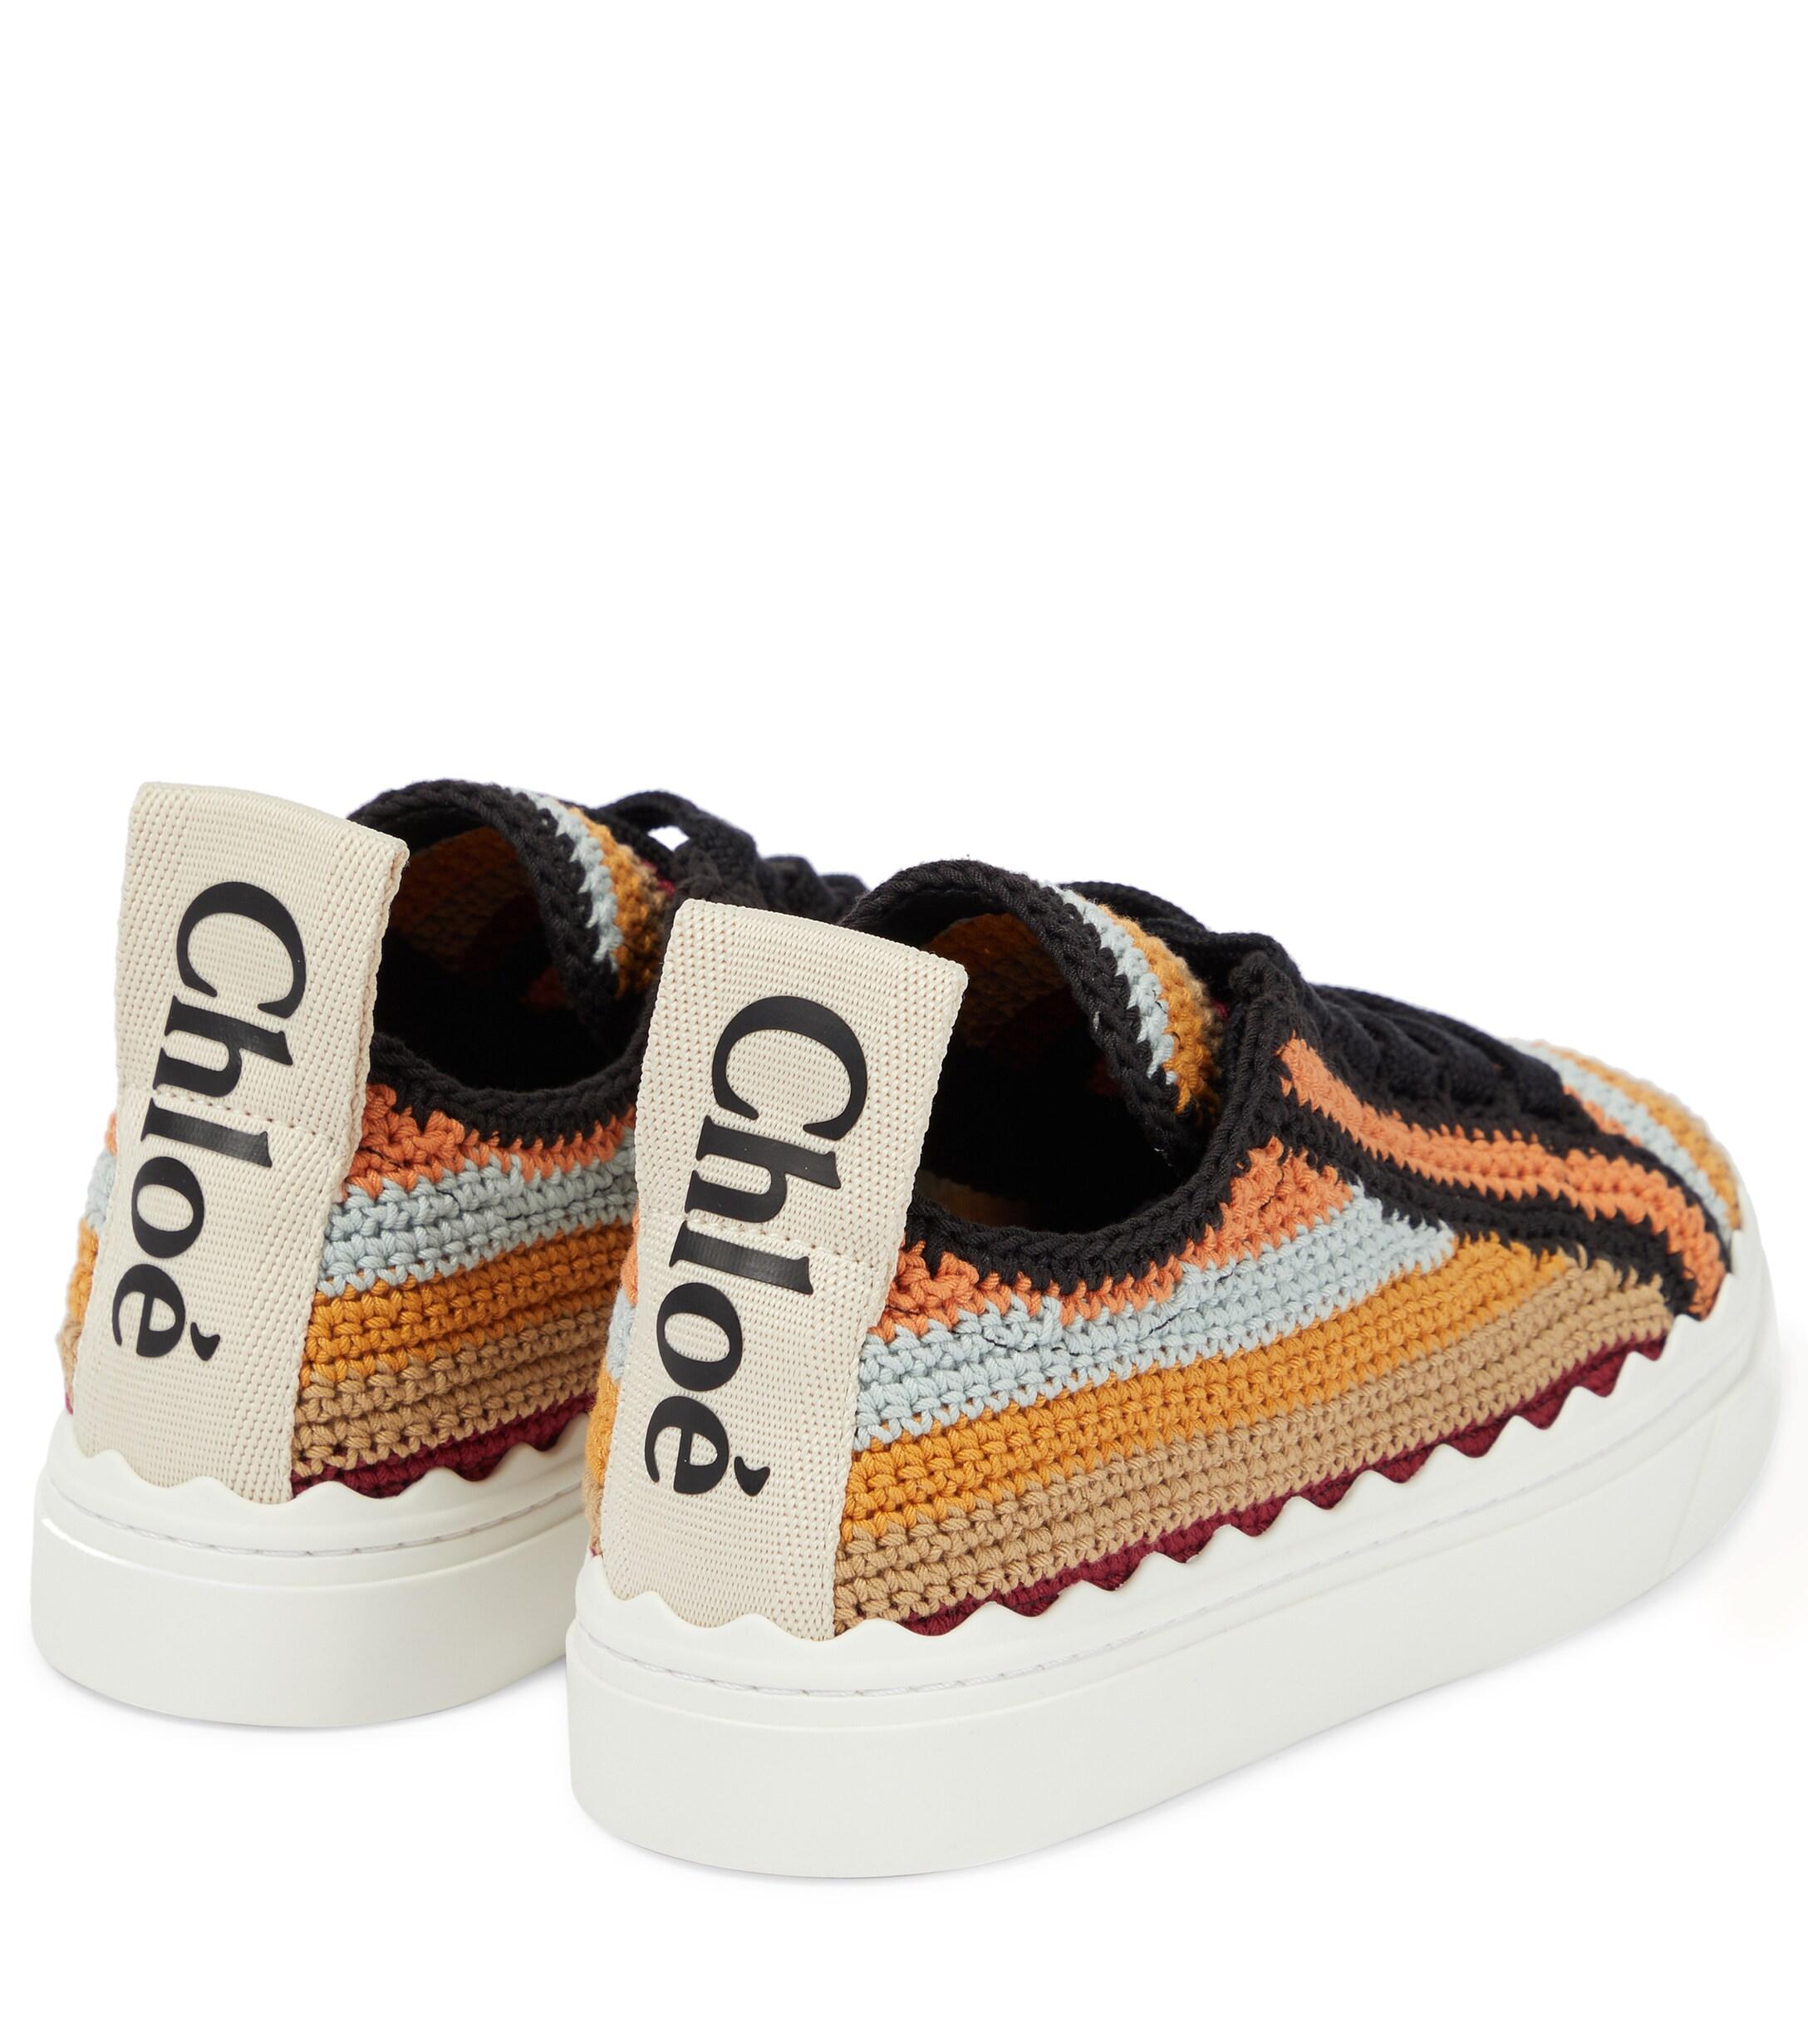 Chloé Chloe Lauren Crocheted Sneakers - Save 30% | Lyst